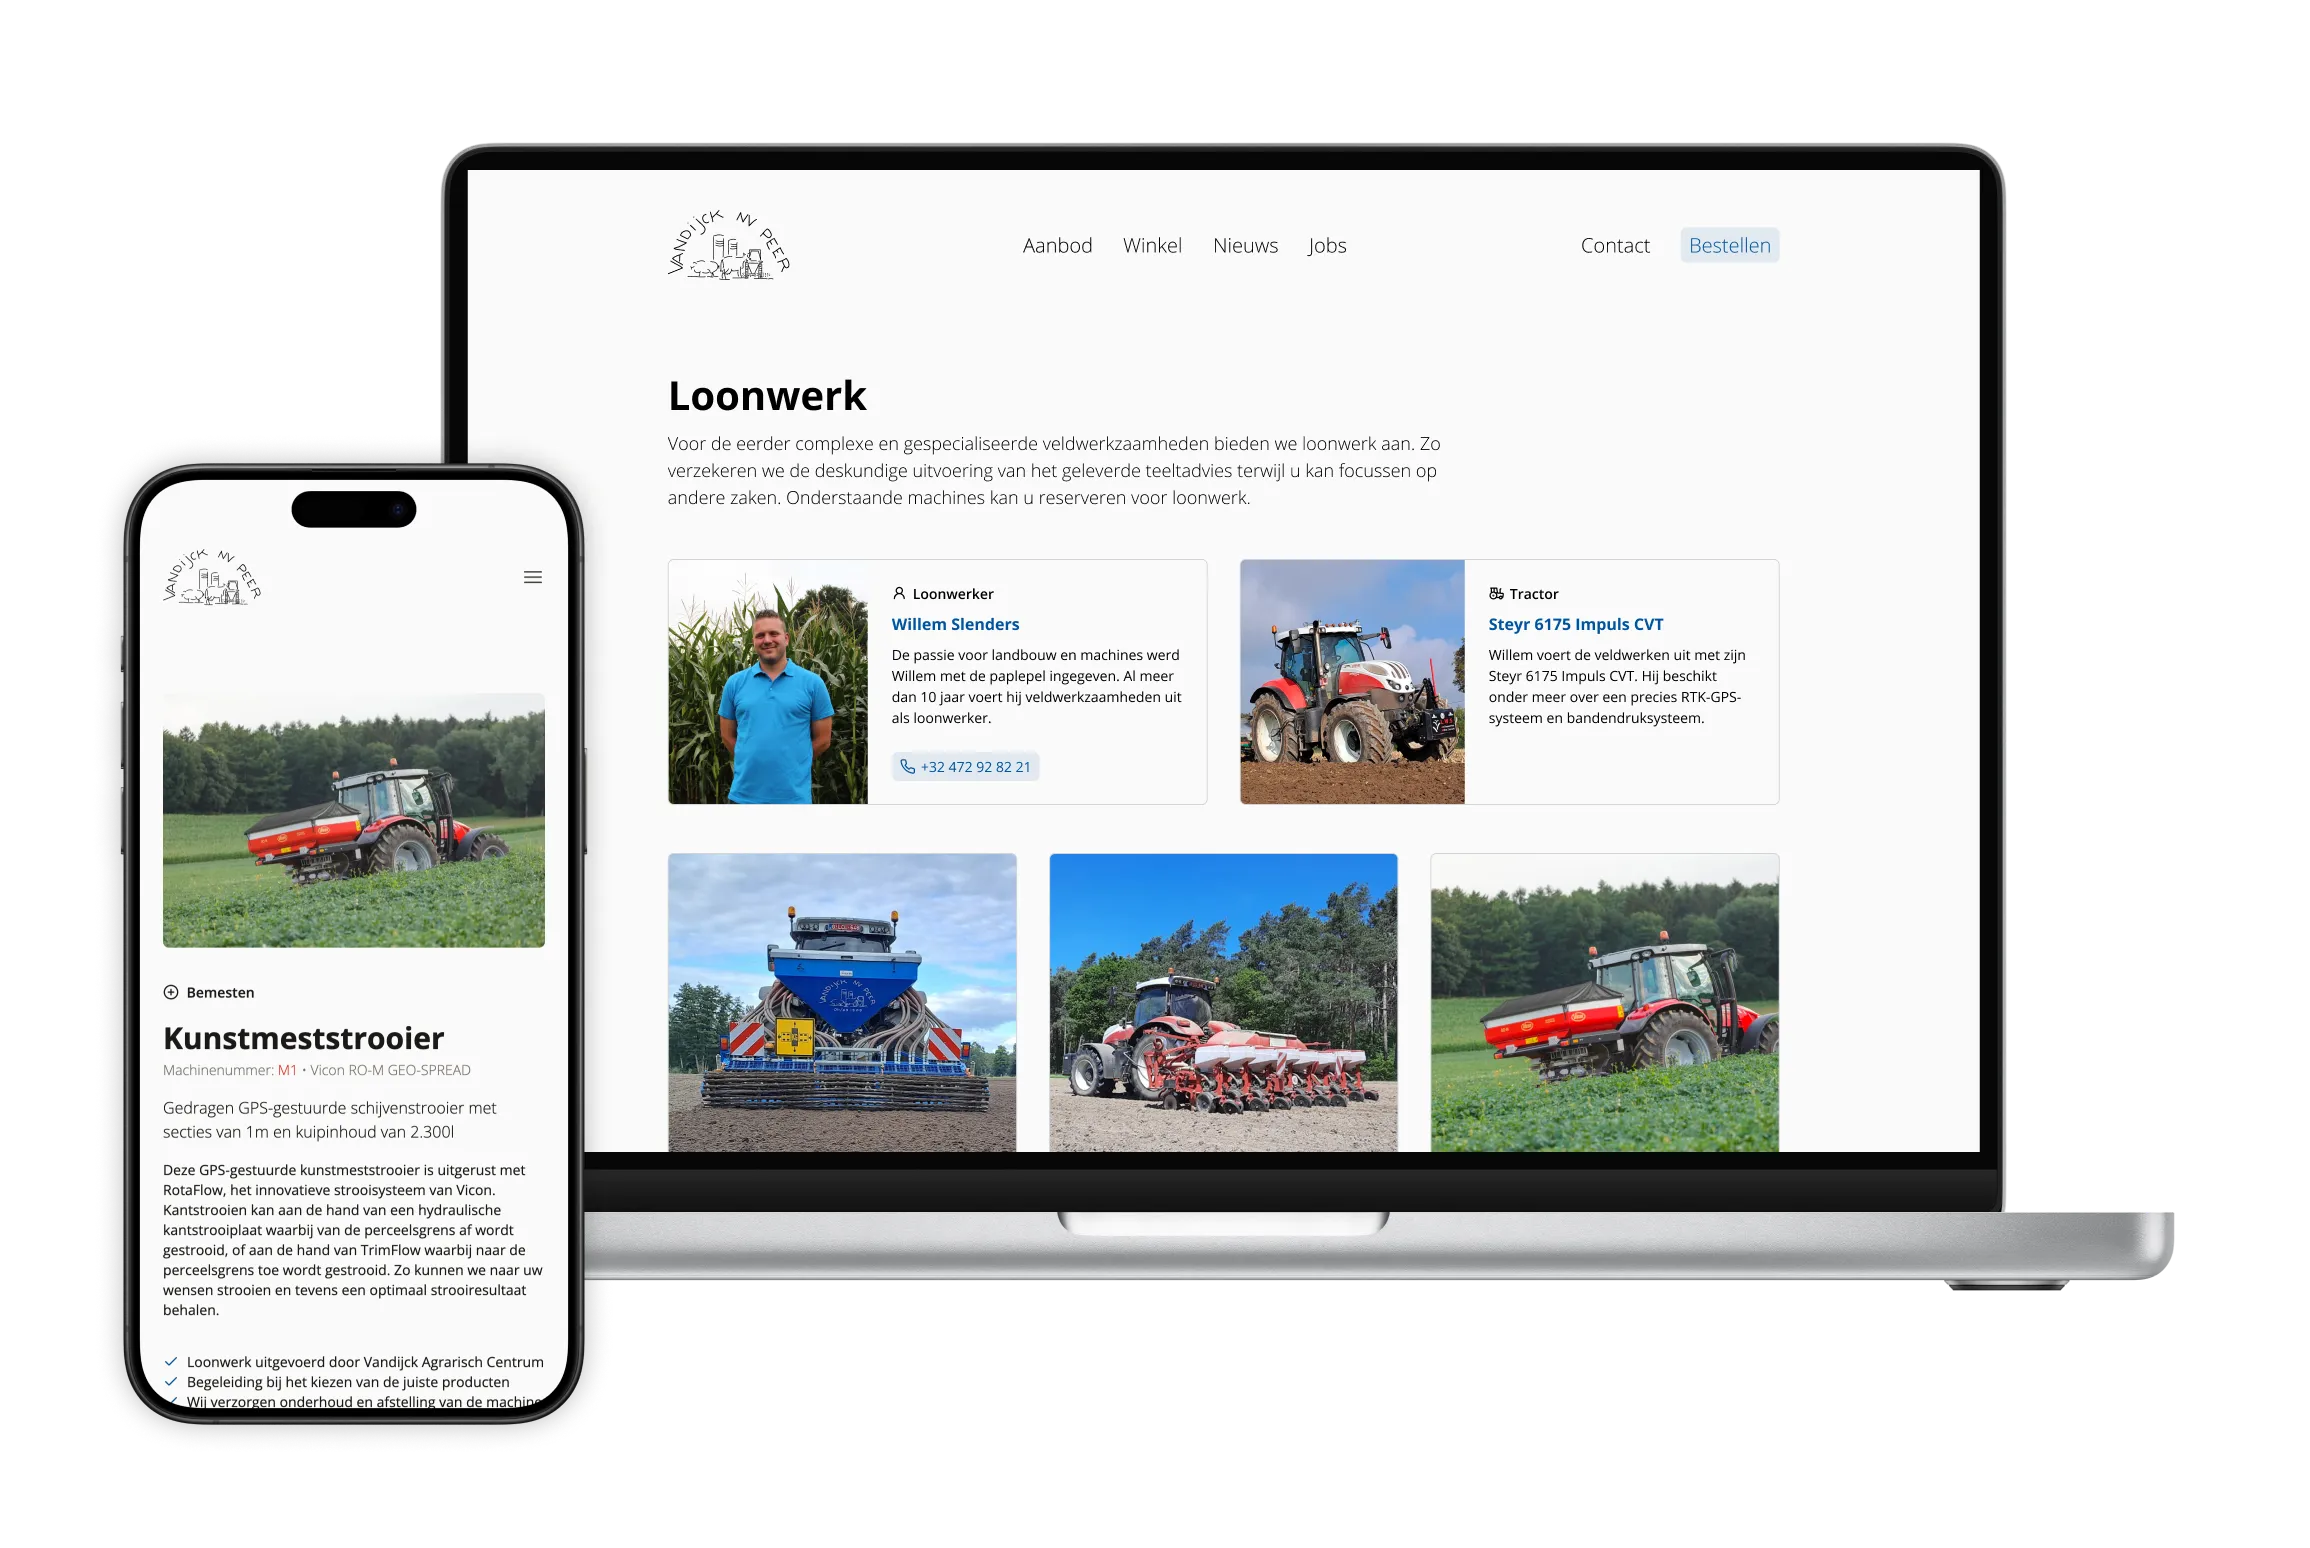 Vernieuwde website biedt overzicht van landbouwmachines en loonwerk